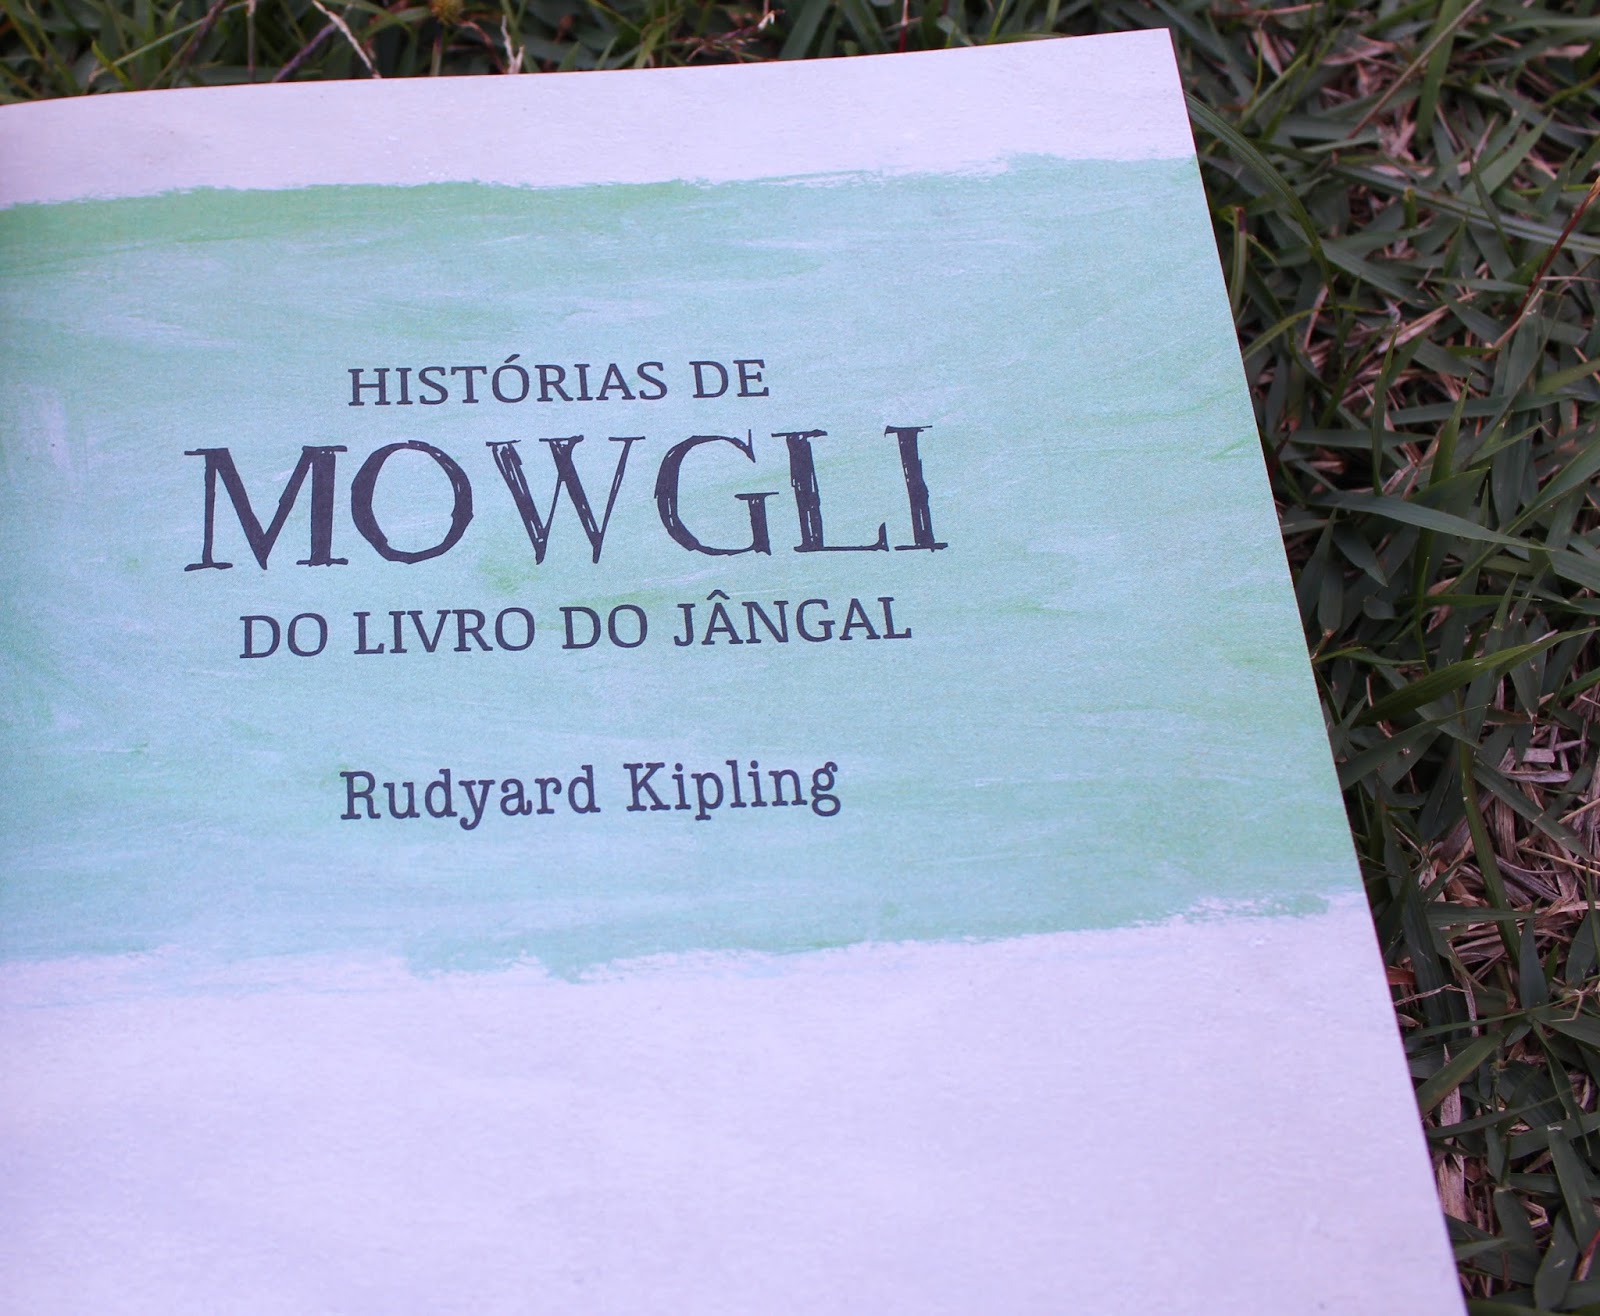 The Jungle Book (The Jungle Book #1) – O Livro da Selva – Rudyard Kipling, Clássico da literatura de Jornada de Crescimento! #resenha